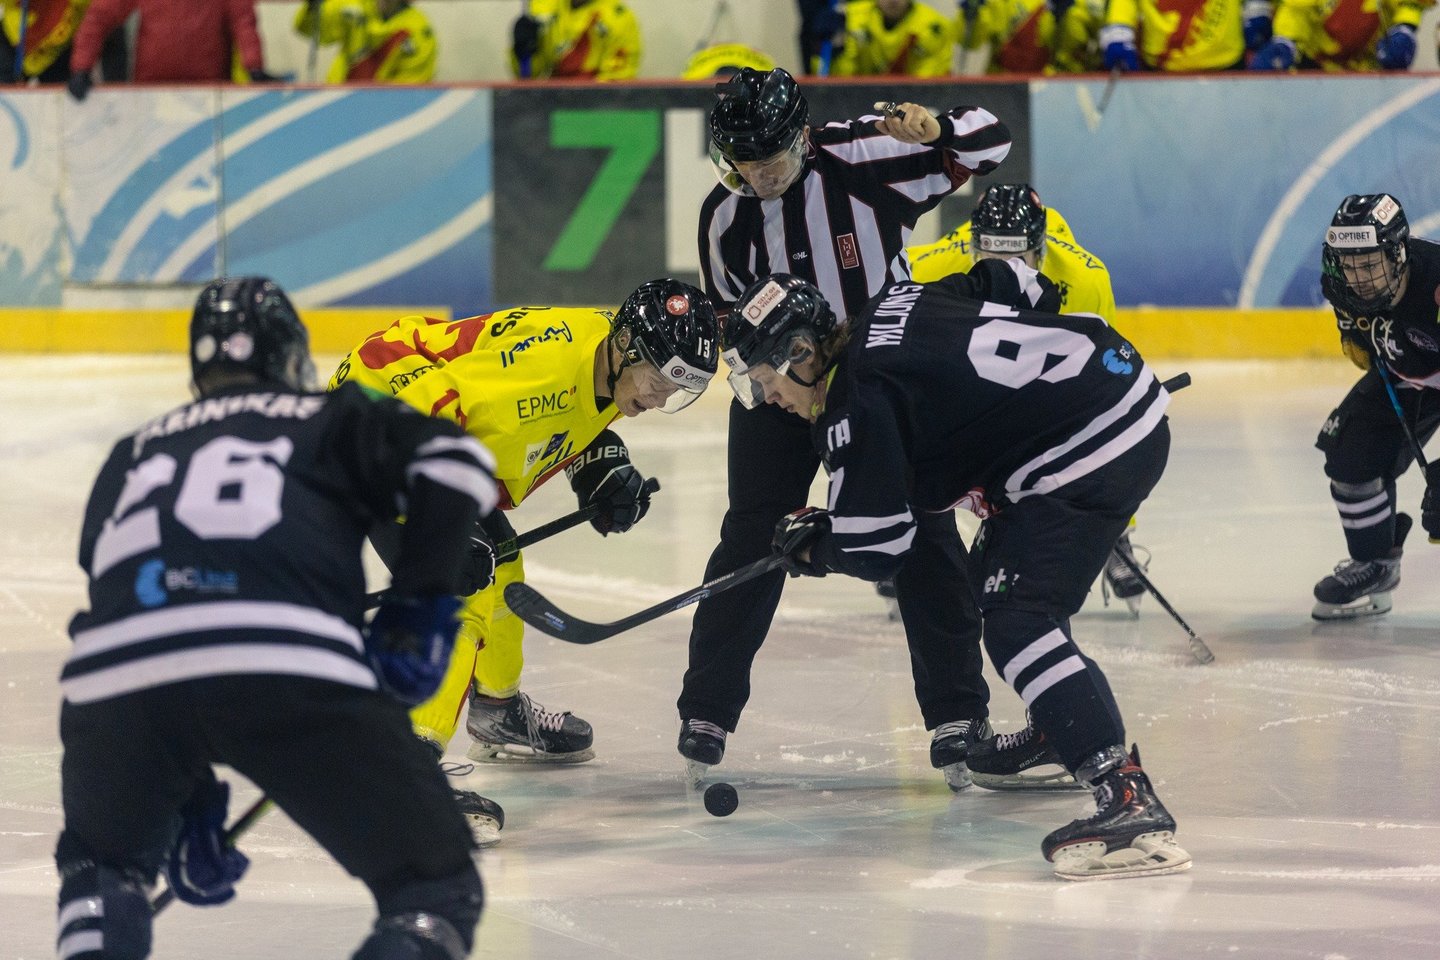 Ledo ritulio sausio mėnesio apžvalga: identiška lietuviškų klubų situacija.<br> Hockey.lt nuotr.